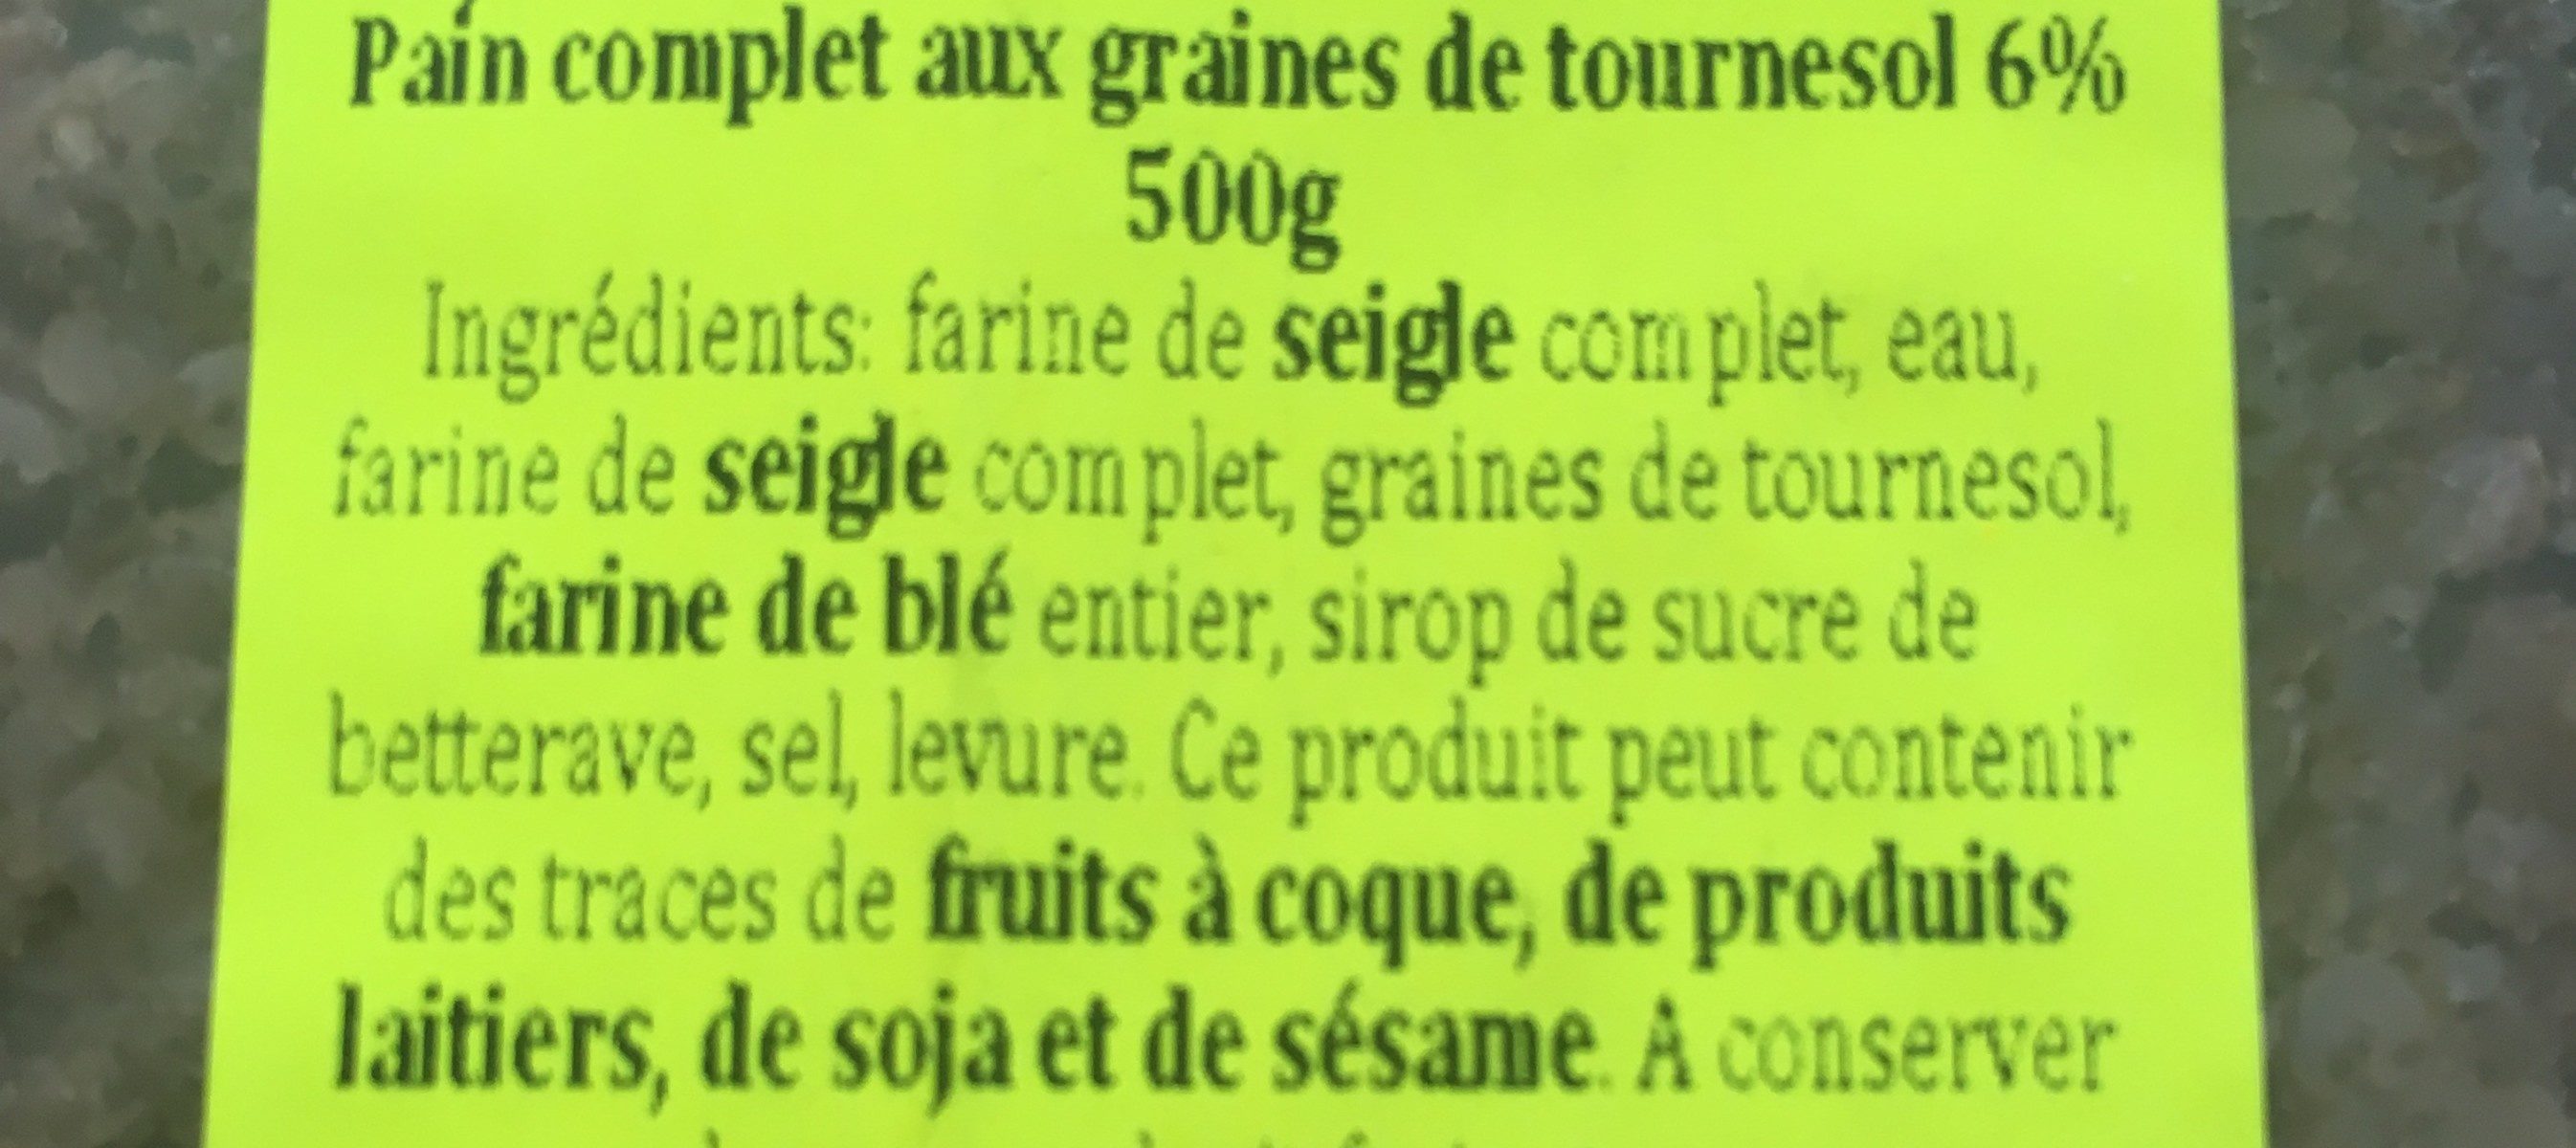 Pain complet aux graines de tournesol - Ingredients - fr